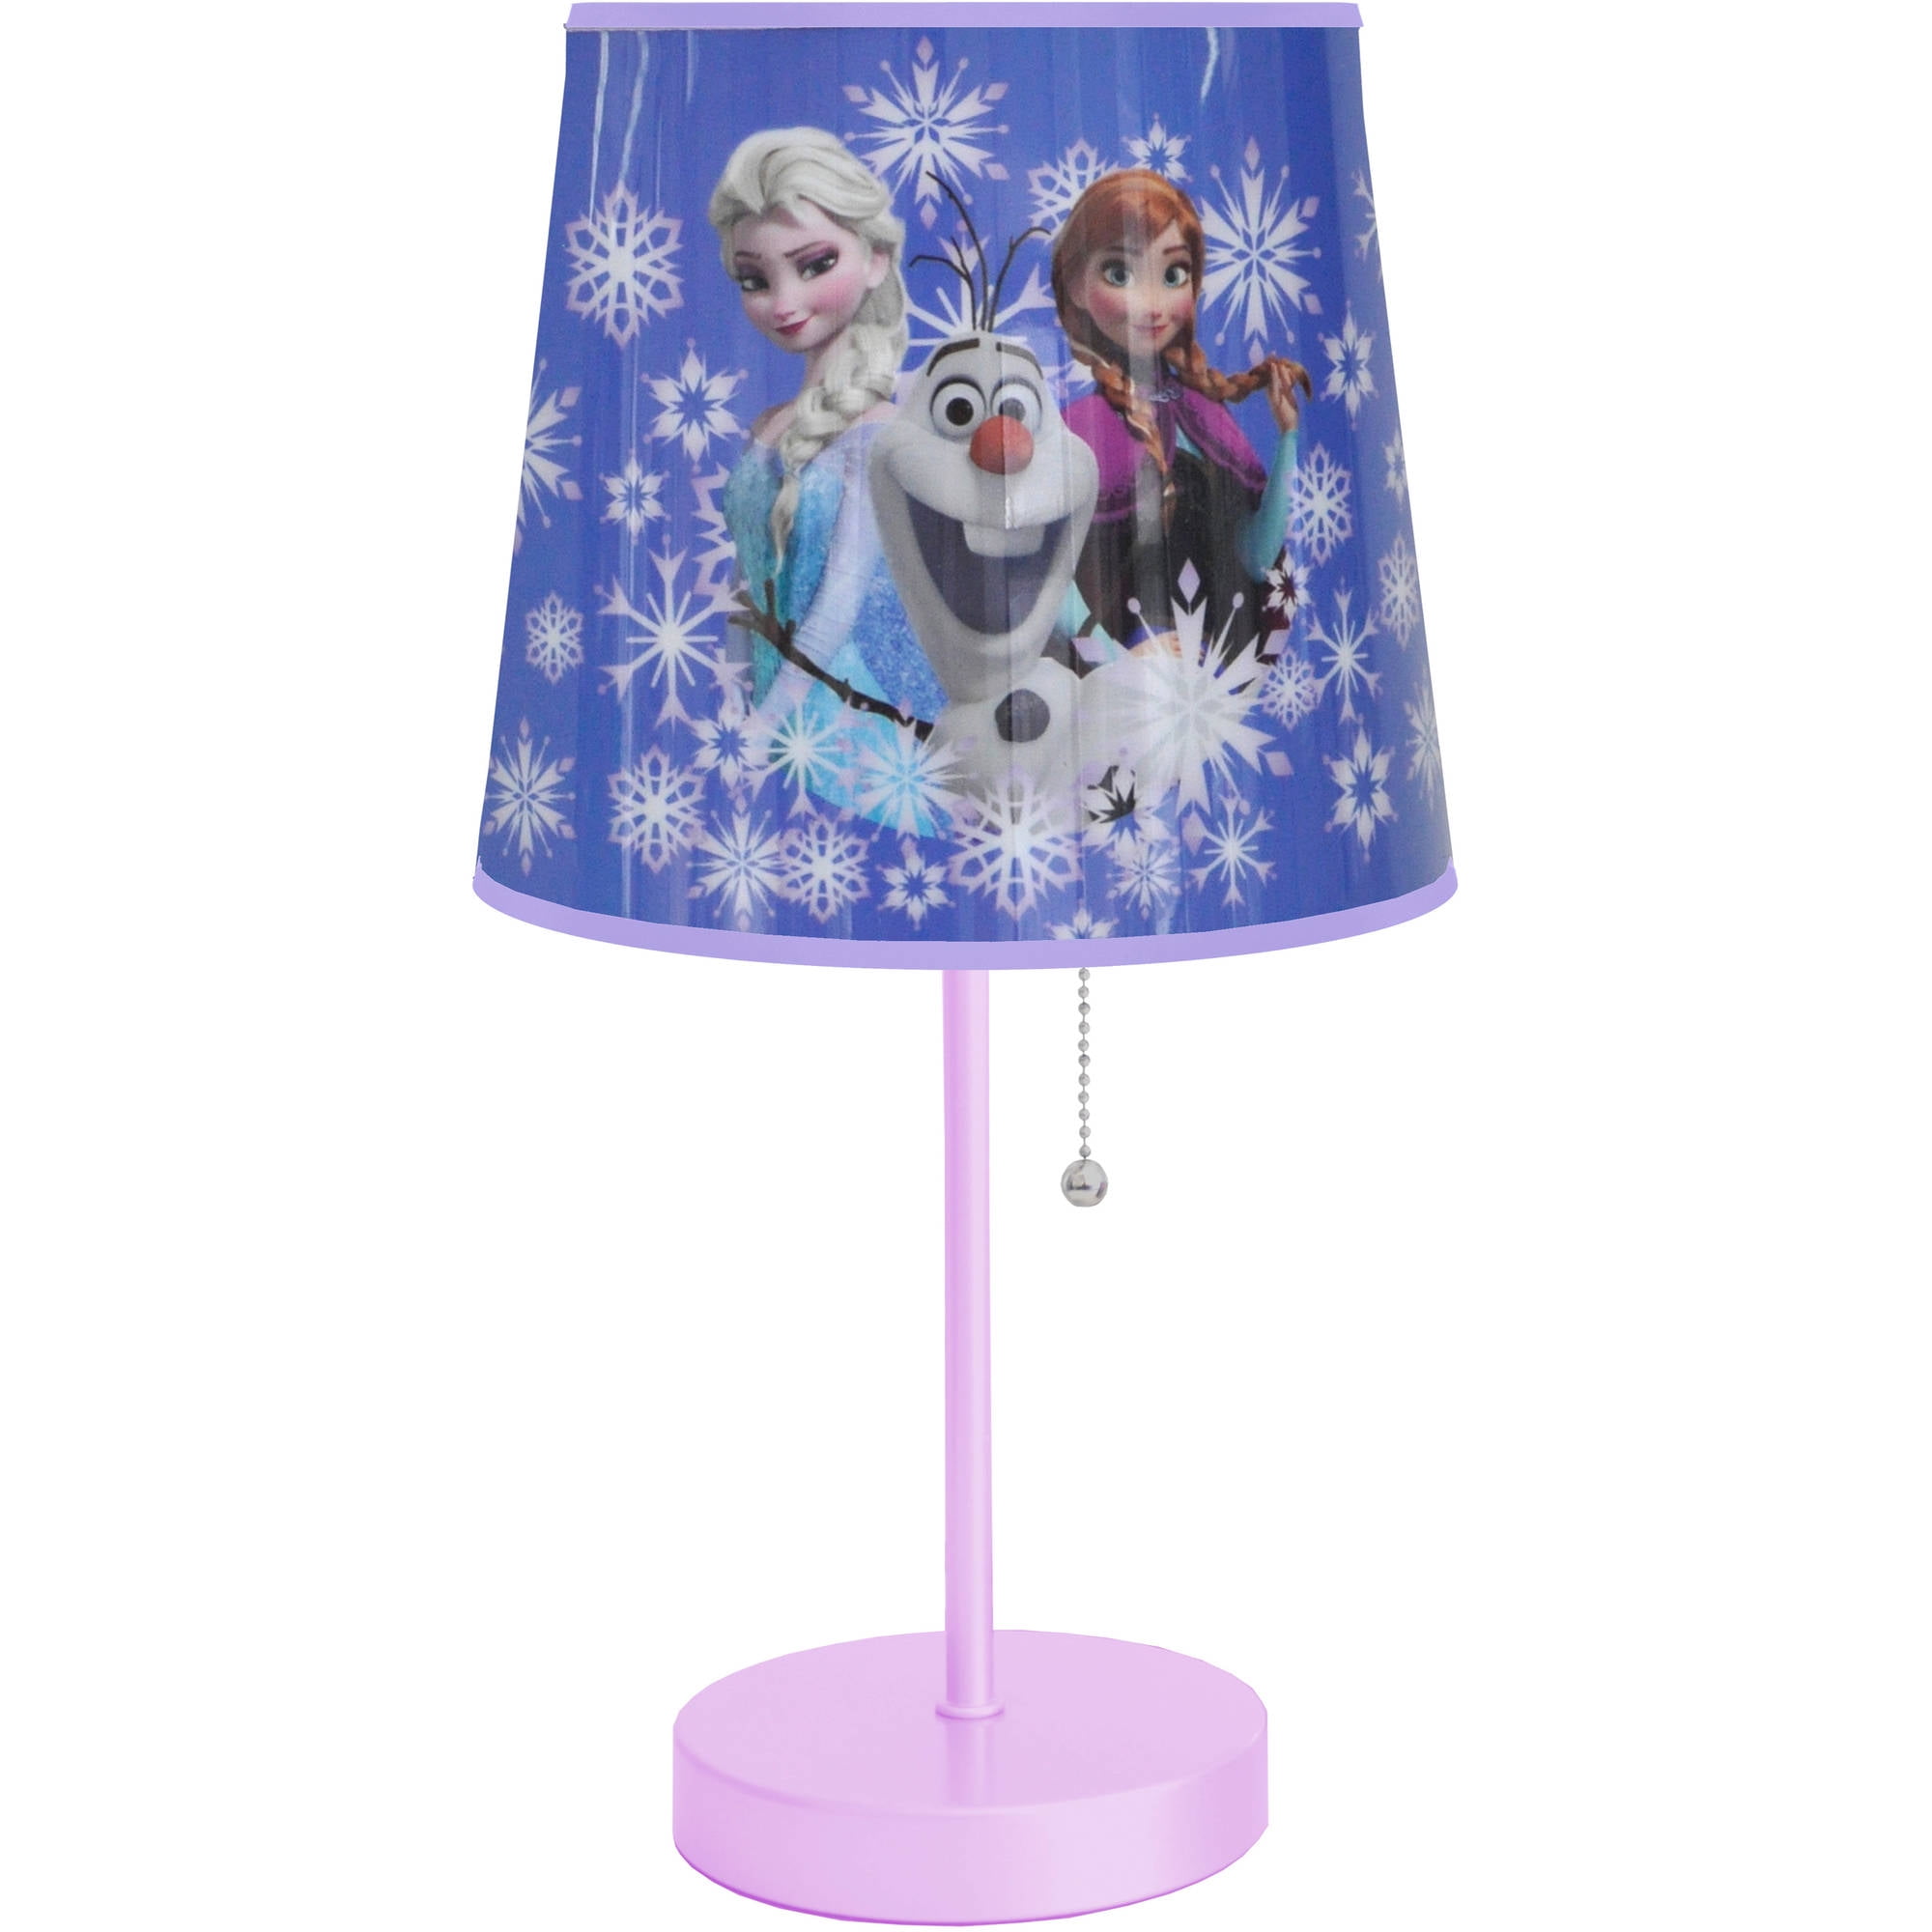 Disney Frozen Lamp - Walmart.com